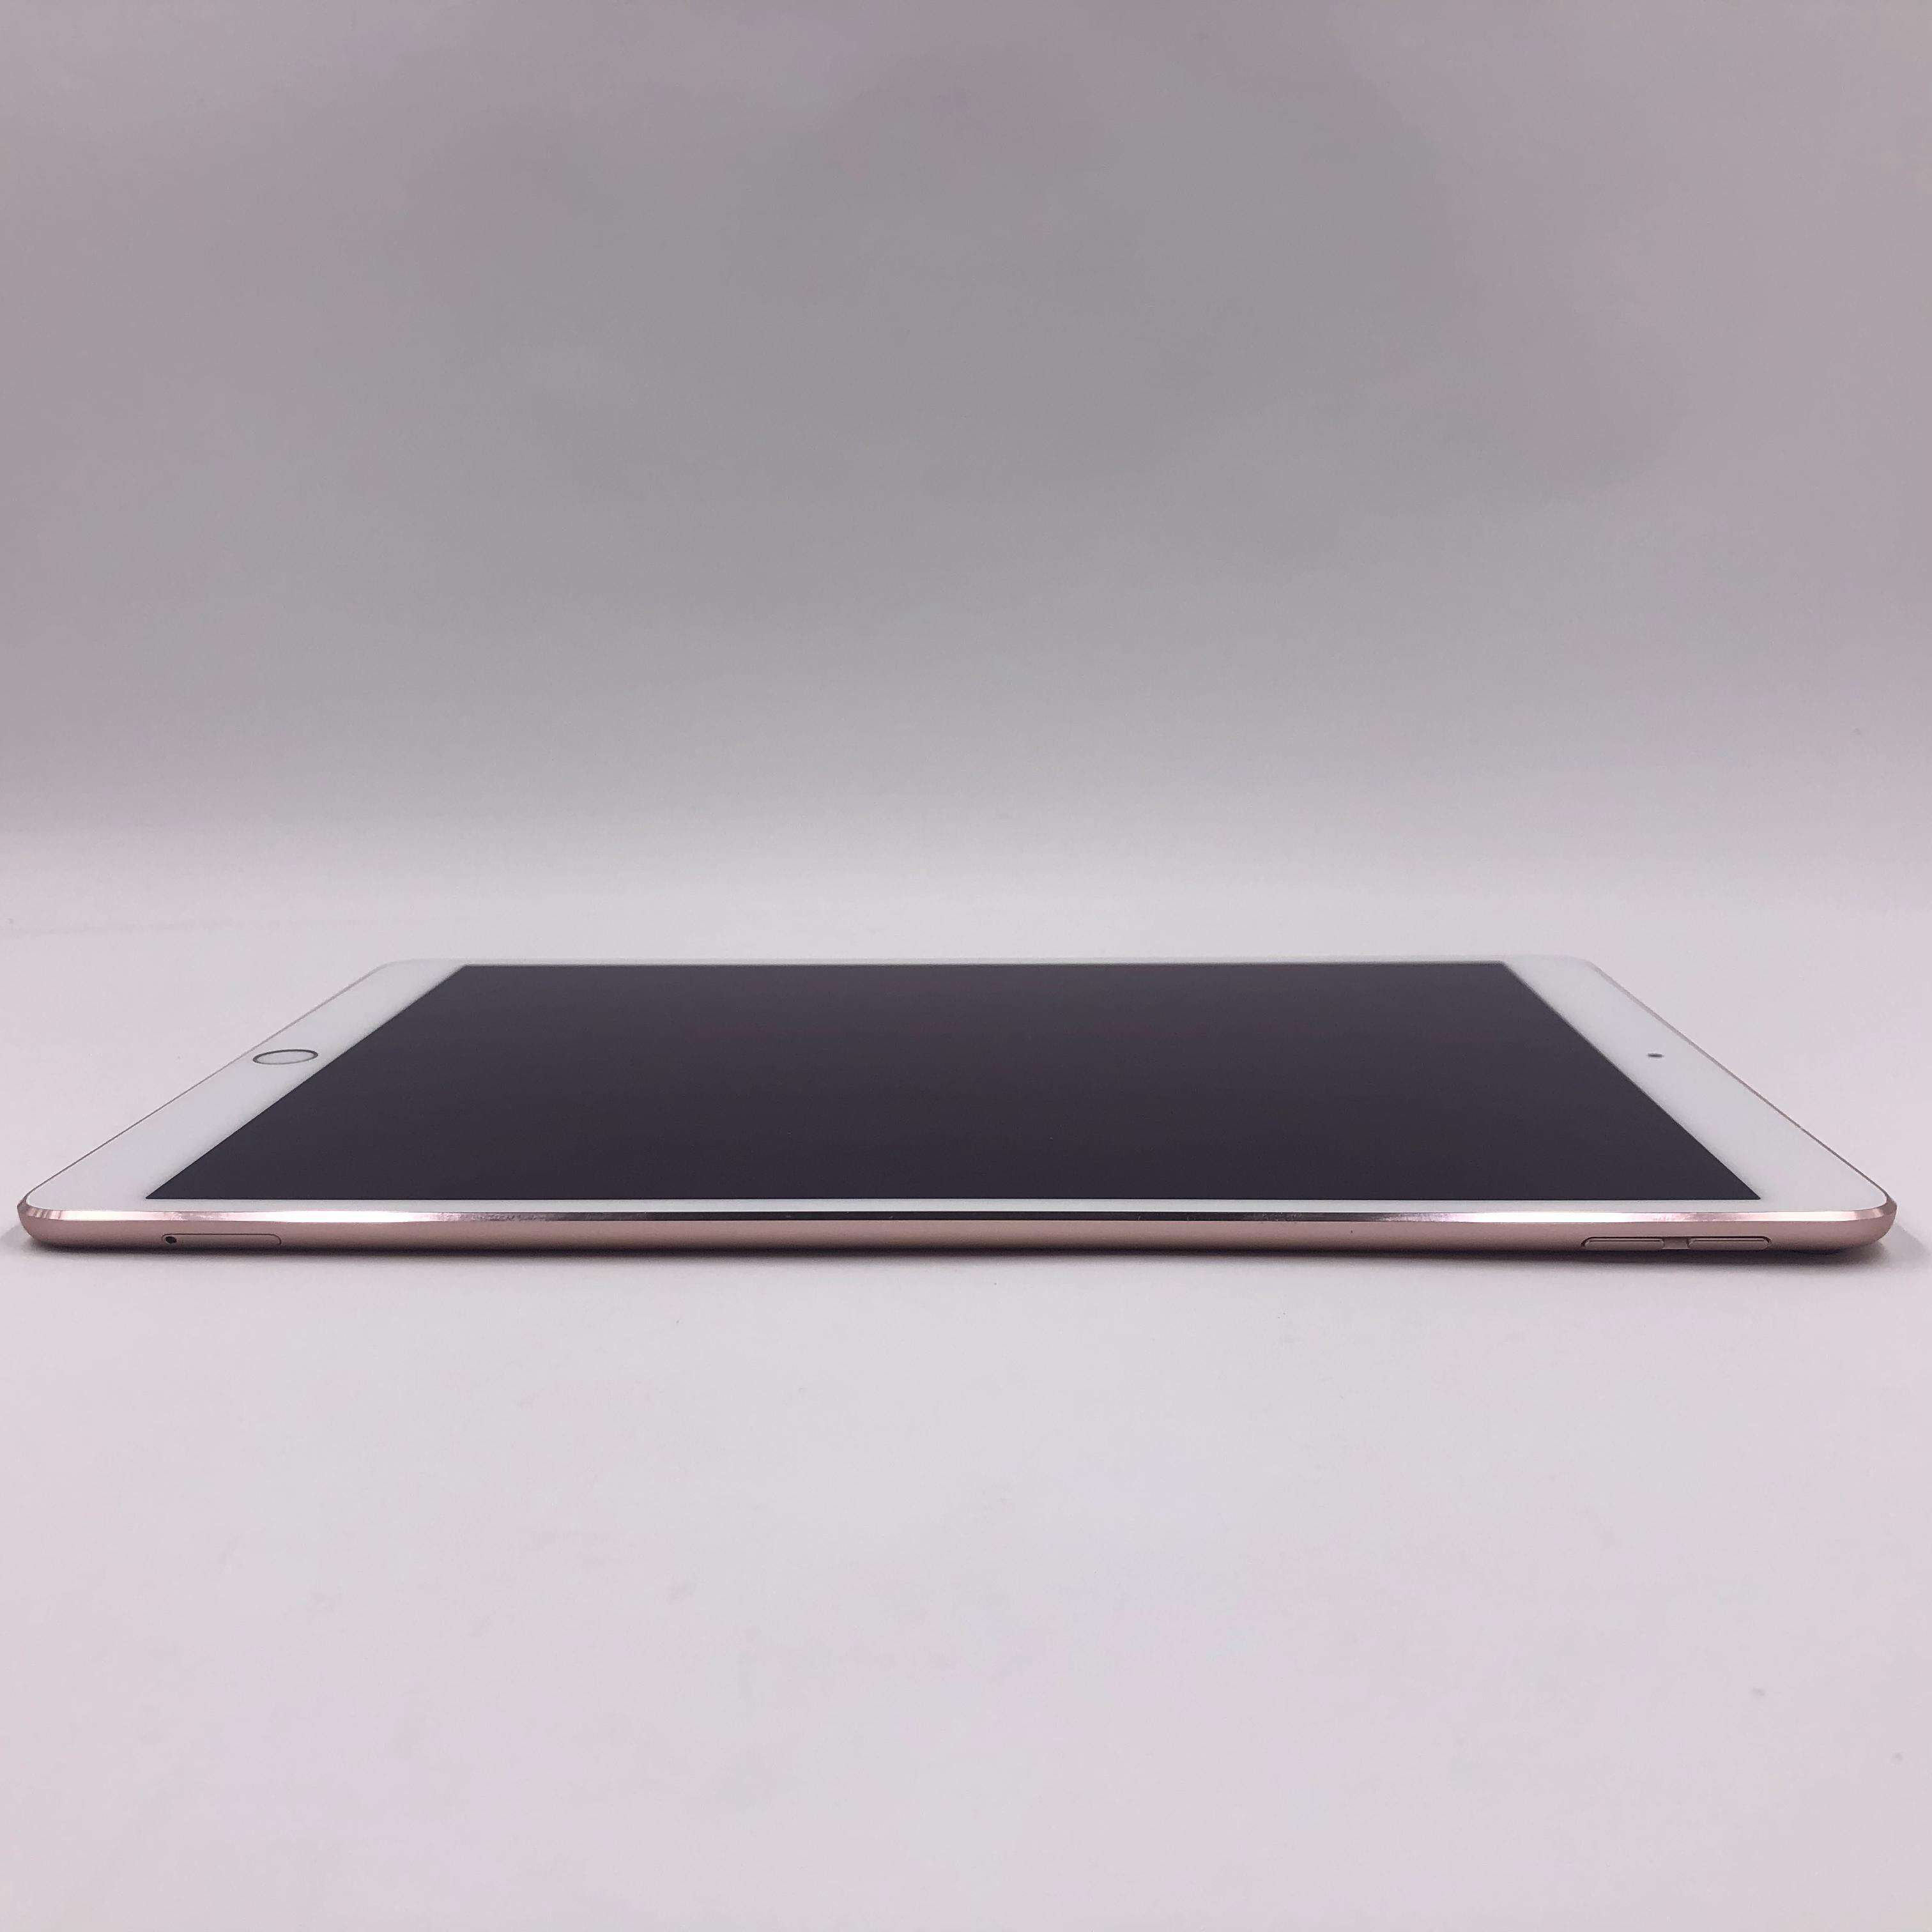 iPad Pro 10.5英寸(2017) 512G 国行Cellular版